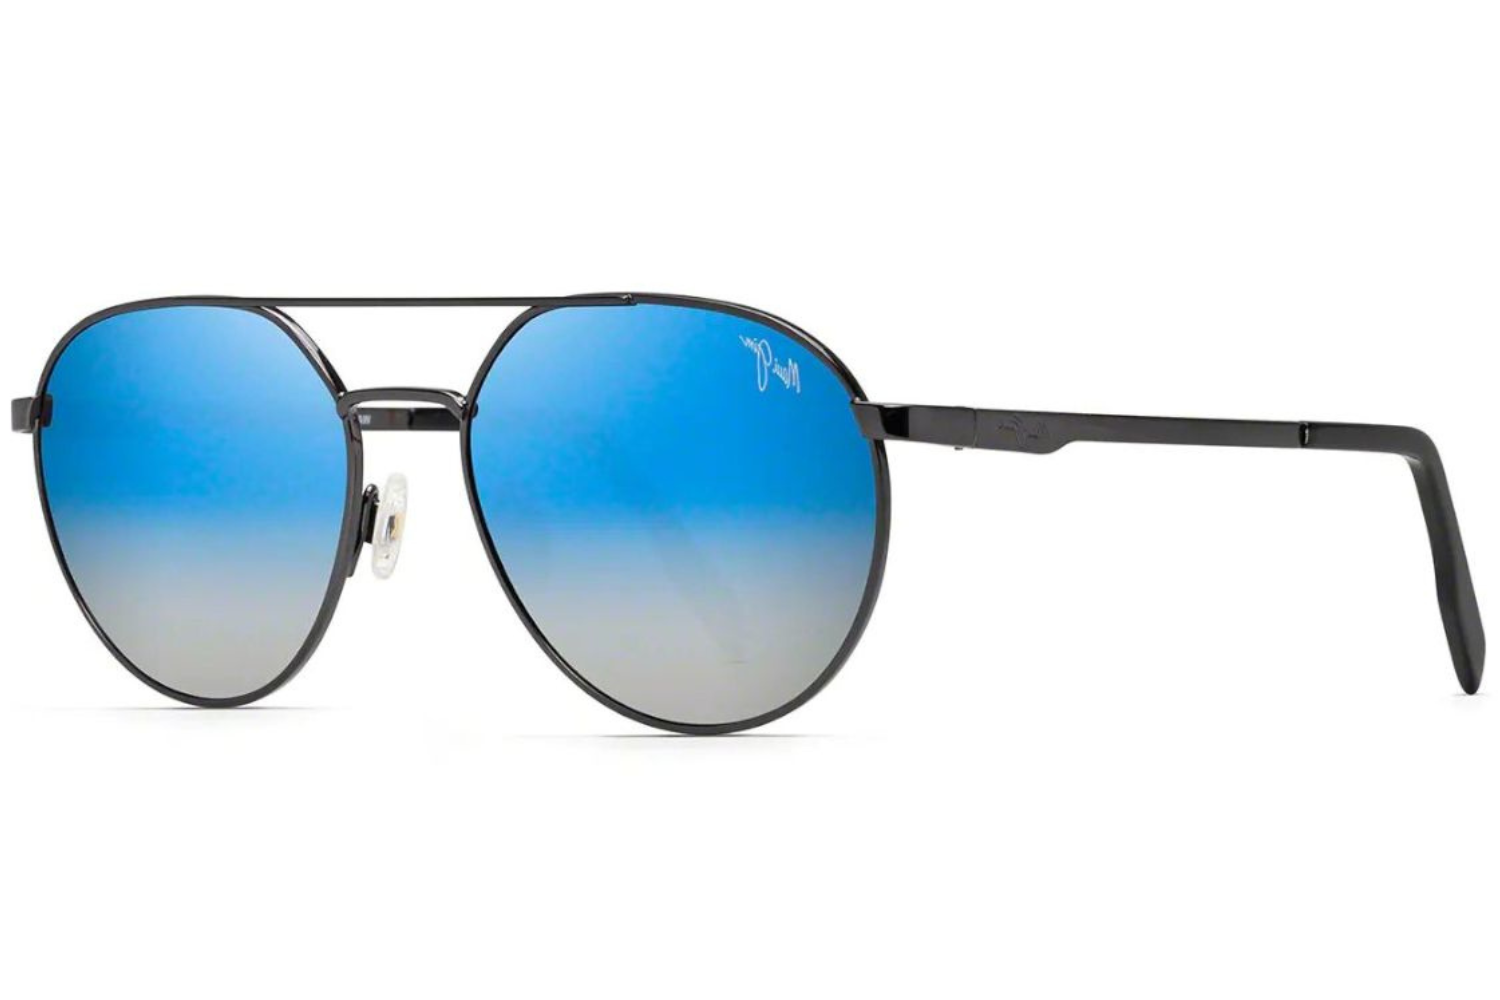 Aggregate more than 135 maui jim sunglasses latest